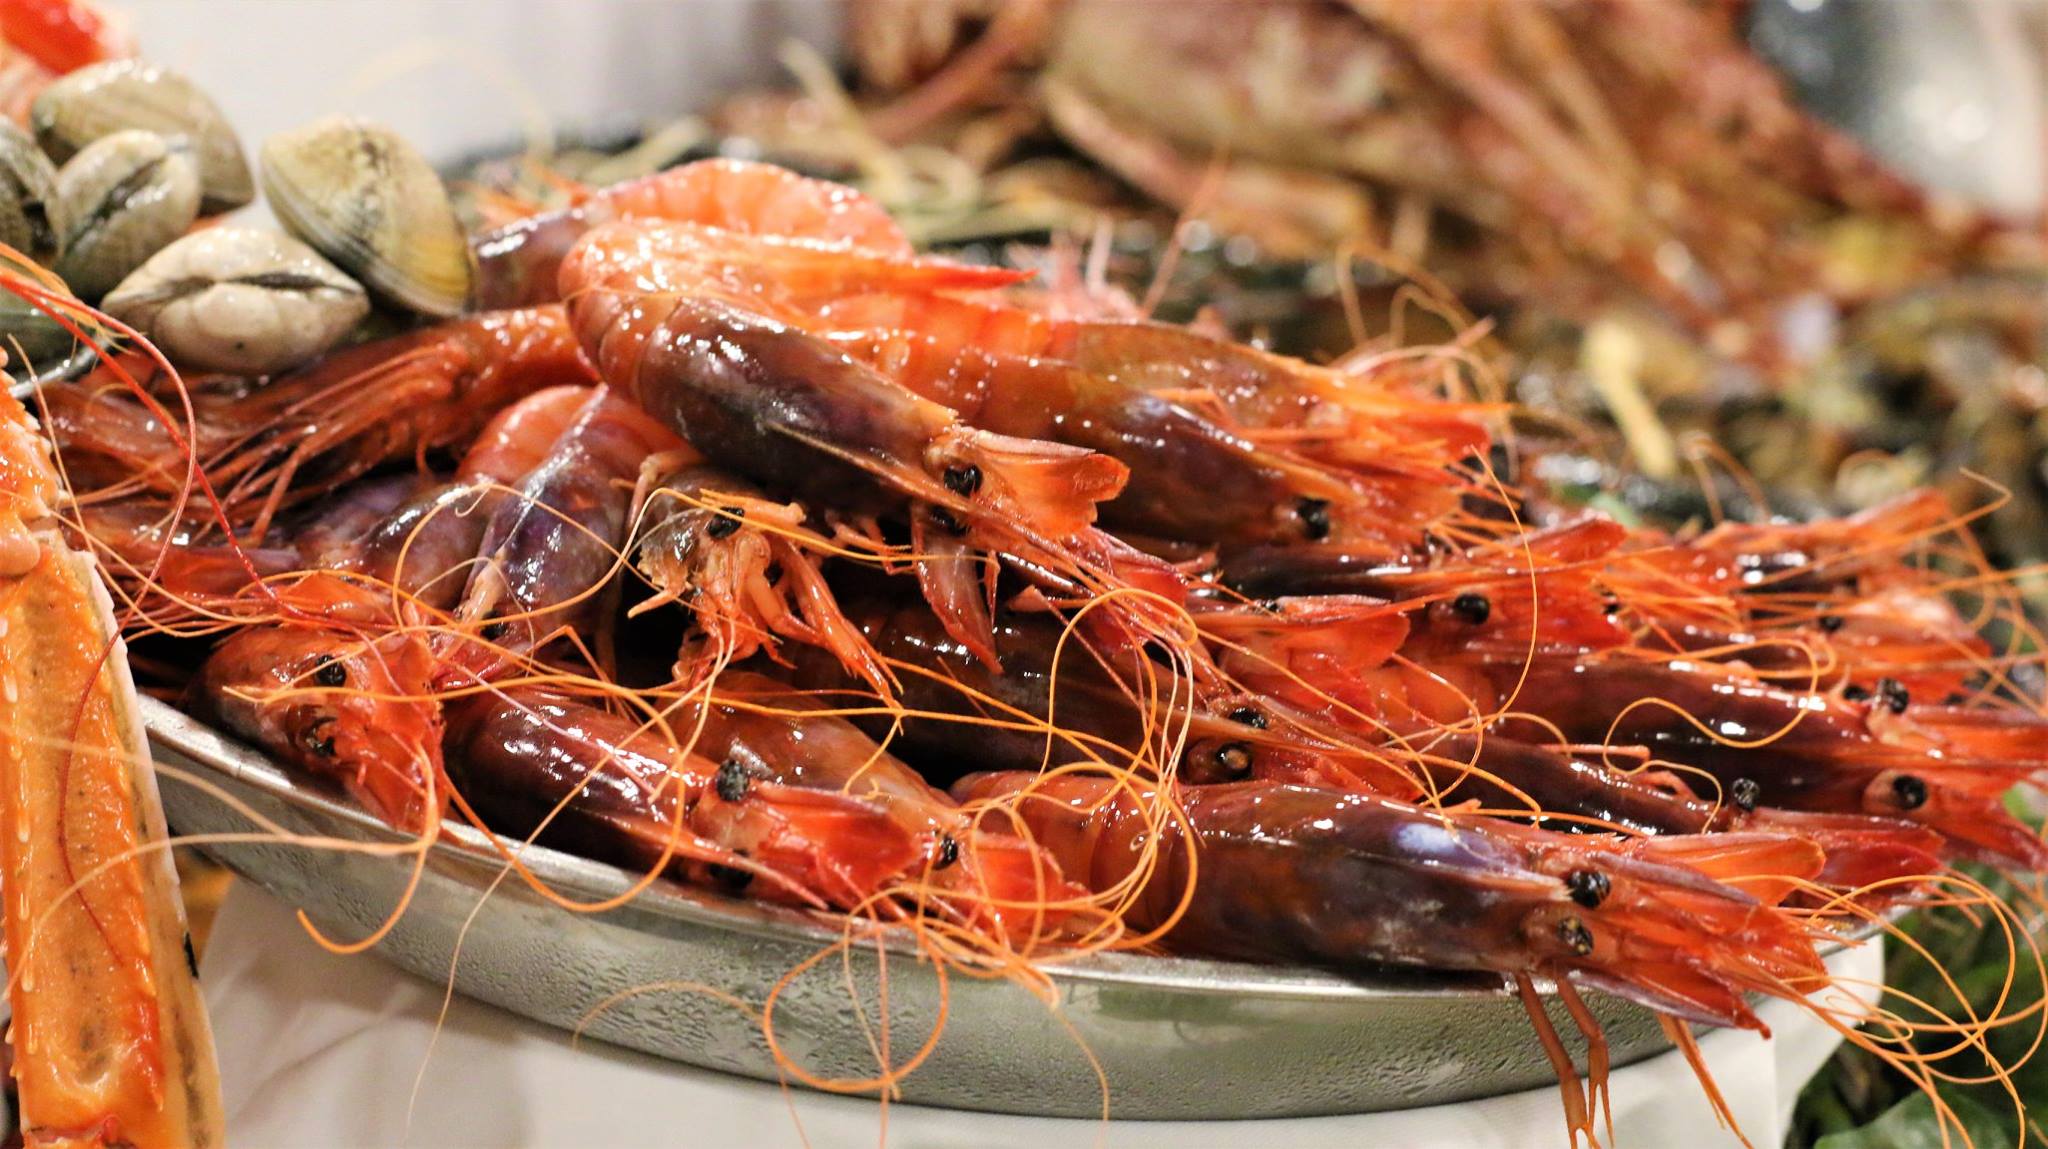 Unglaubliches Restaurant mit frischen Meeresfrüchten neben den Stränden von Barcelona